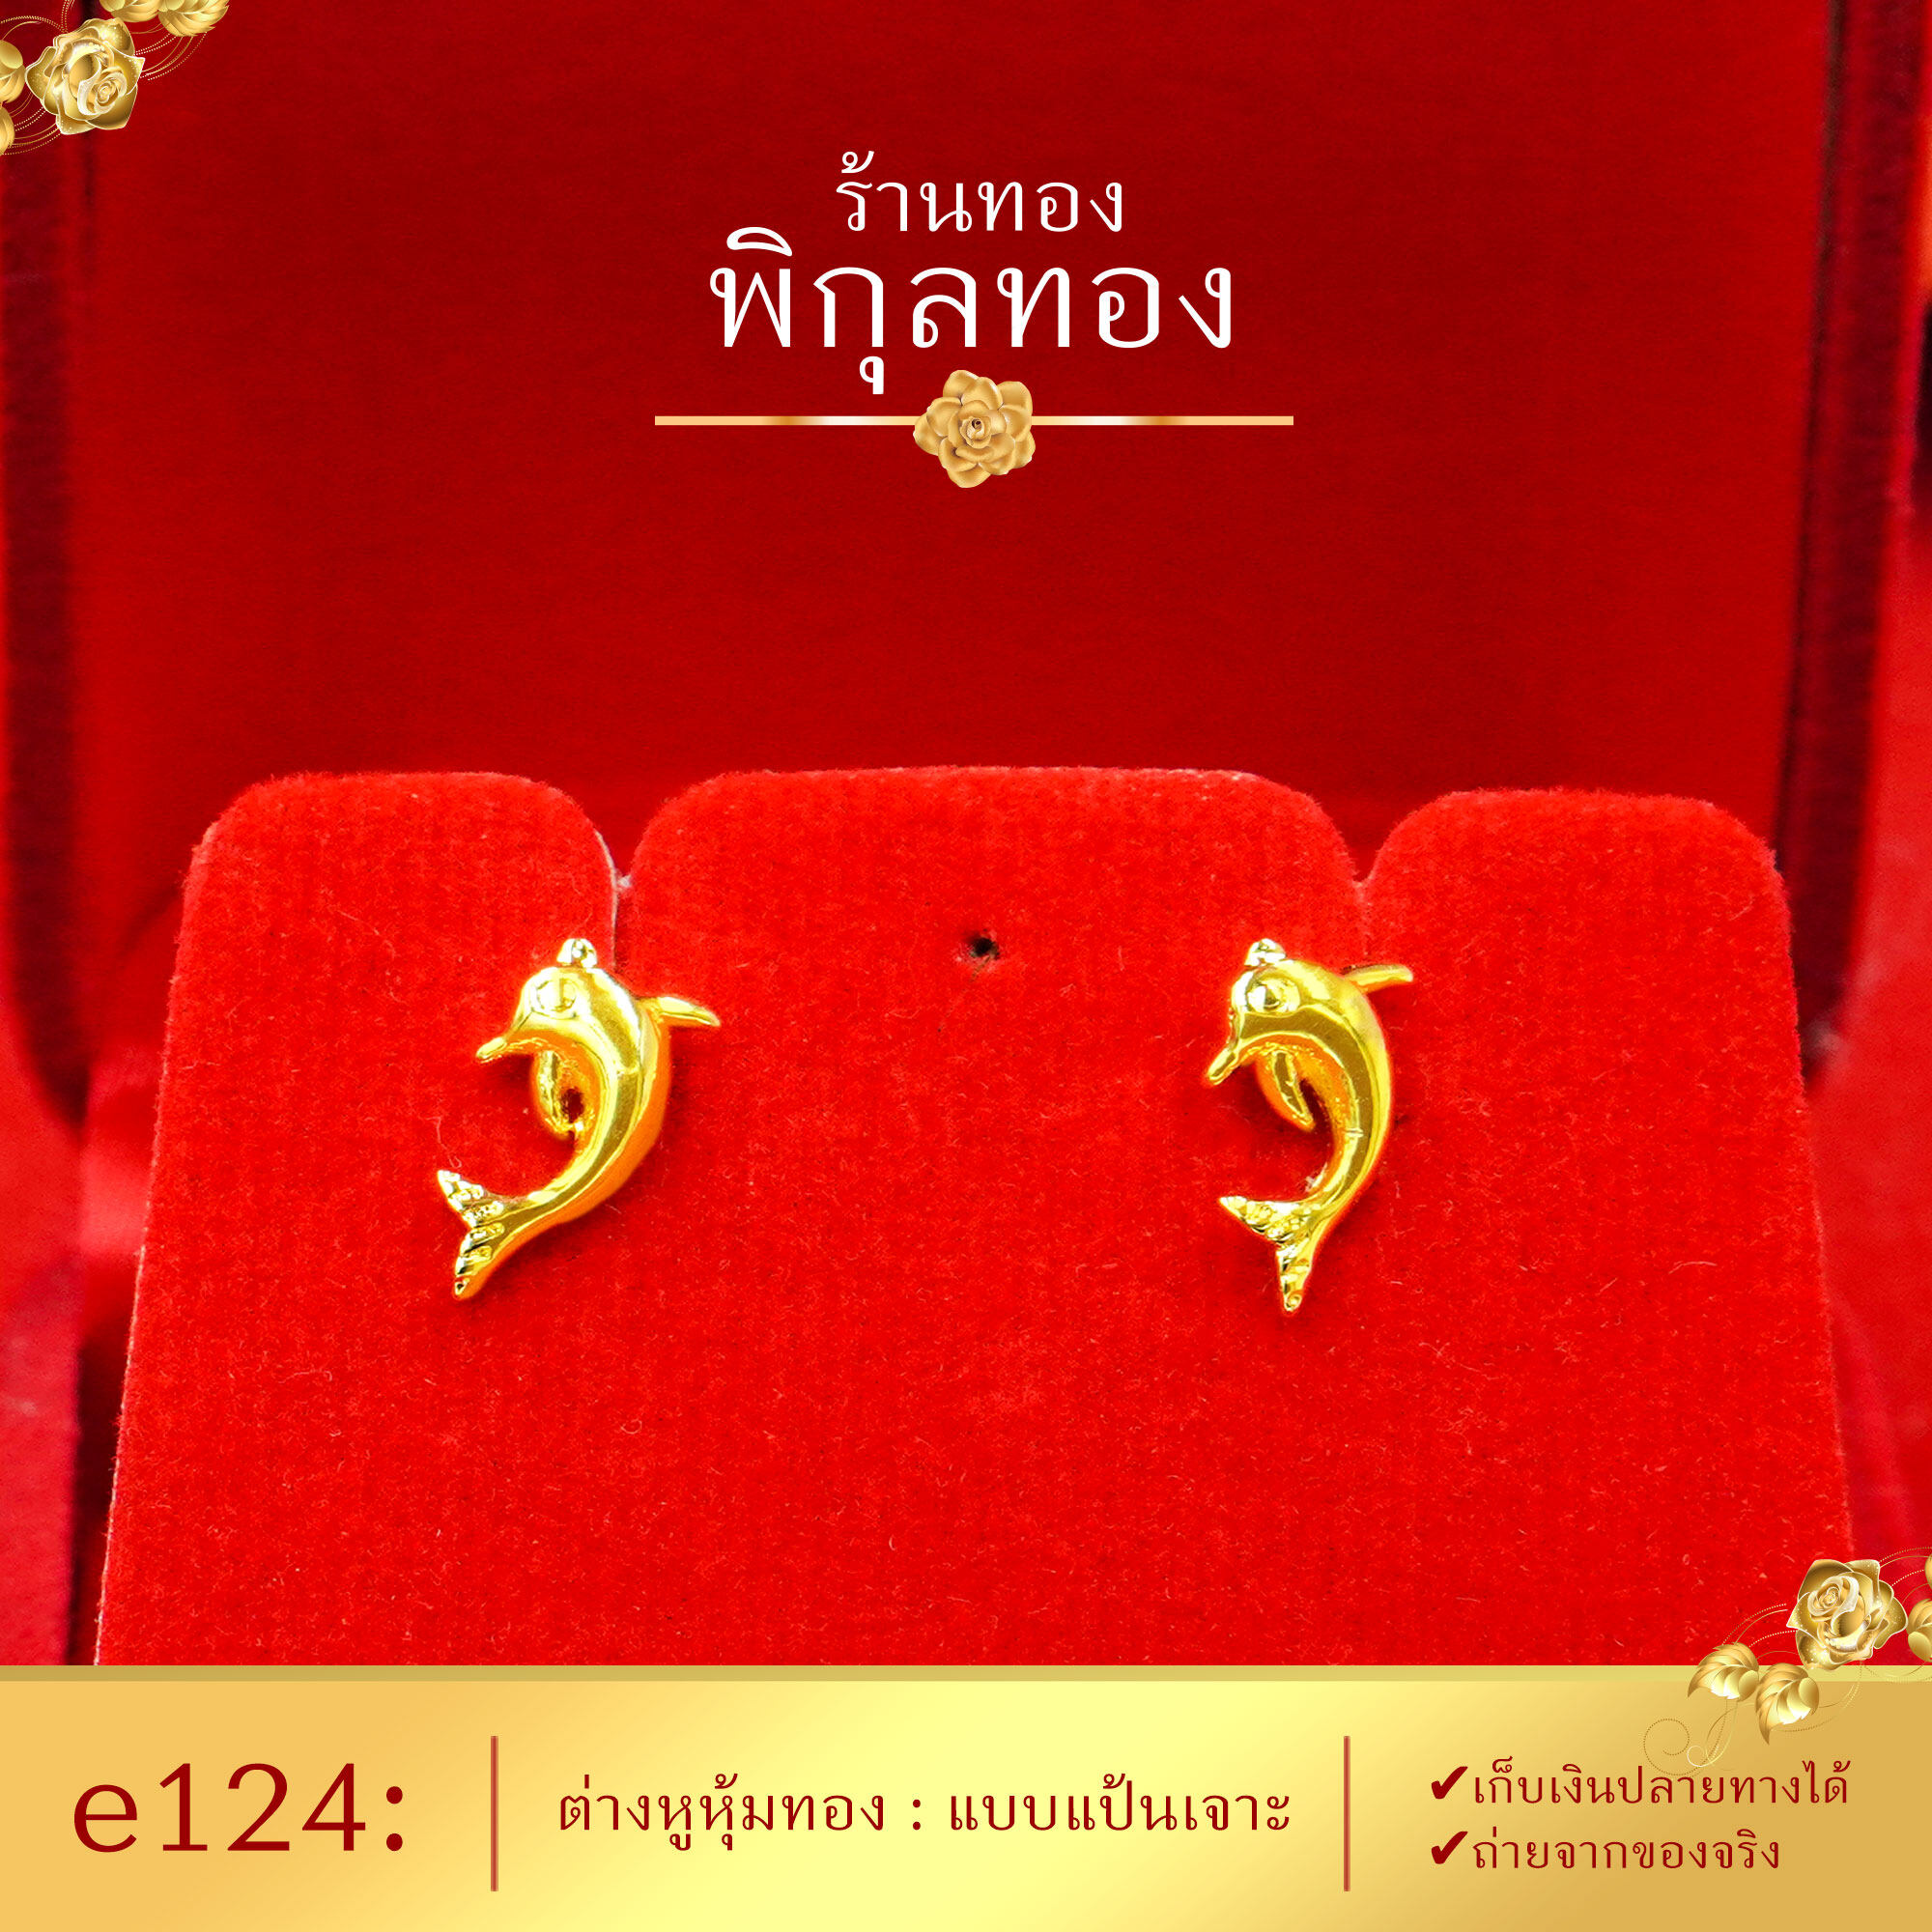 Pikunthong e124 ต่างหู ต่างหูทอง ต่างหูหุ้มทองแท้ ตุ้มหูทอง ต่างหูทองหุ้ม พิกุลทอง [หุ้มทองแท้ เกรดพิเศษ]